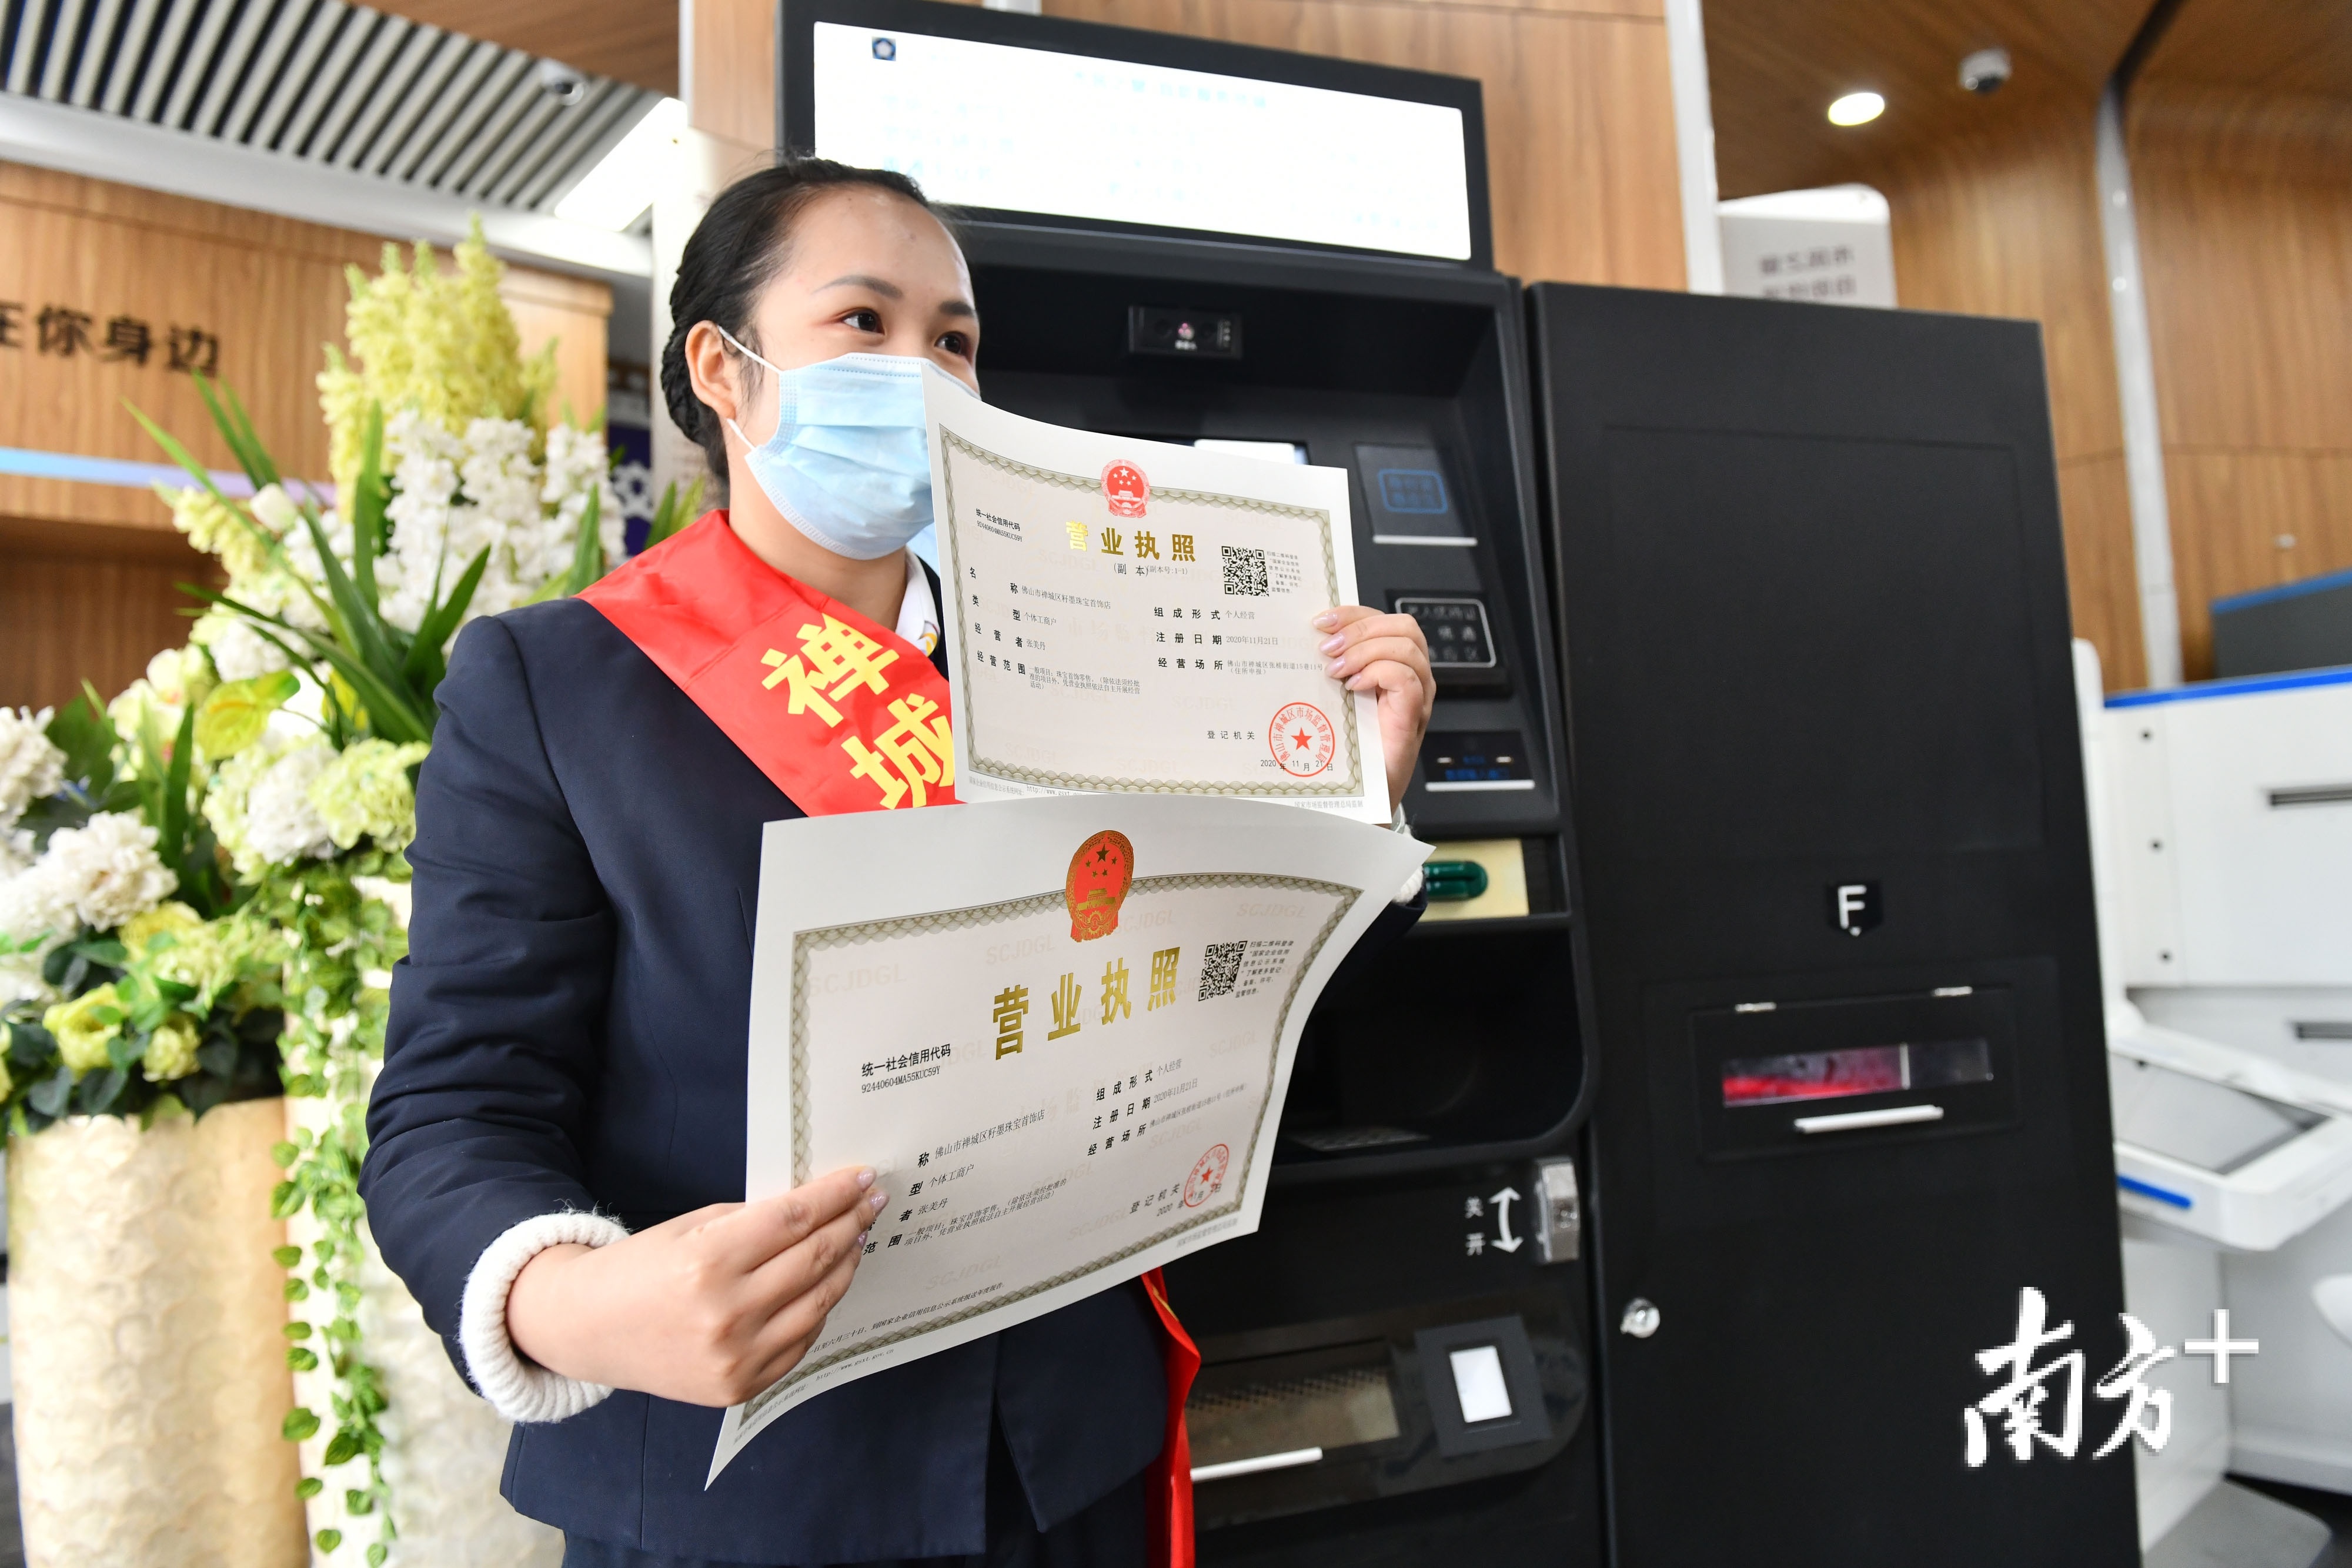 通过惠企智能柜台，市民可以自助打印营业执照。